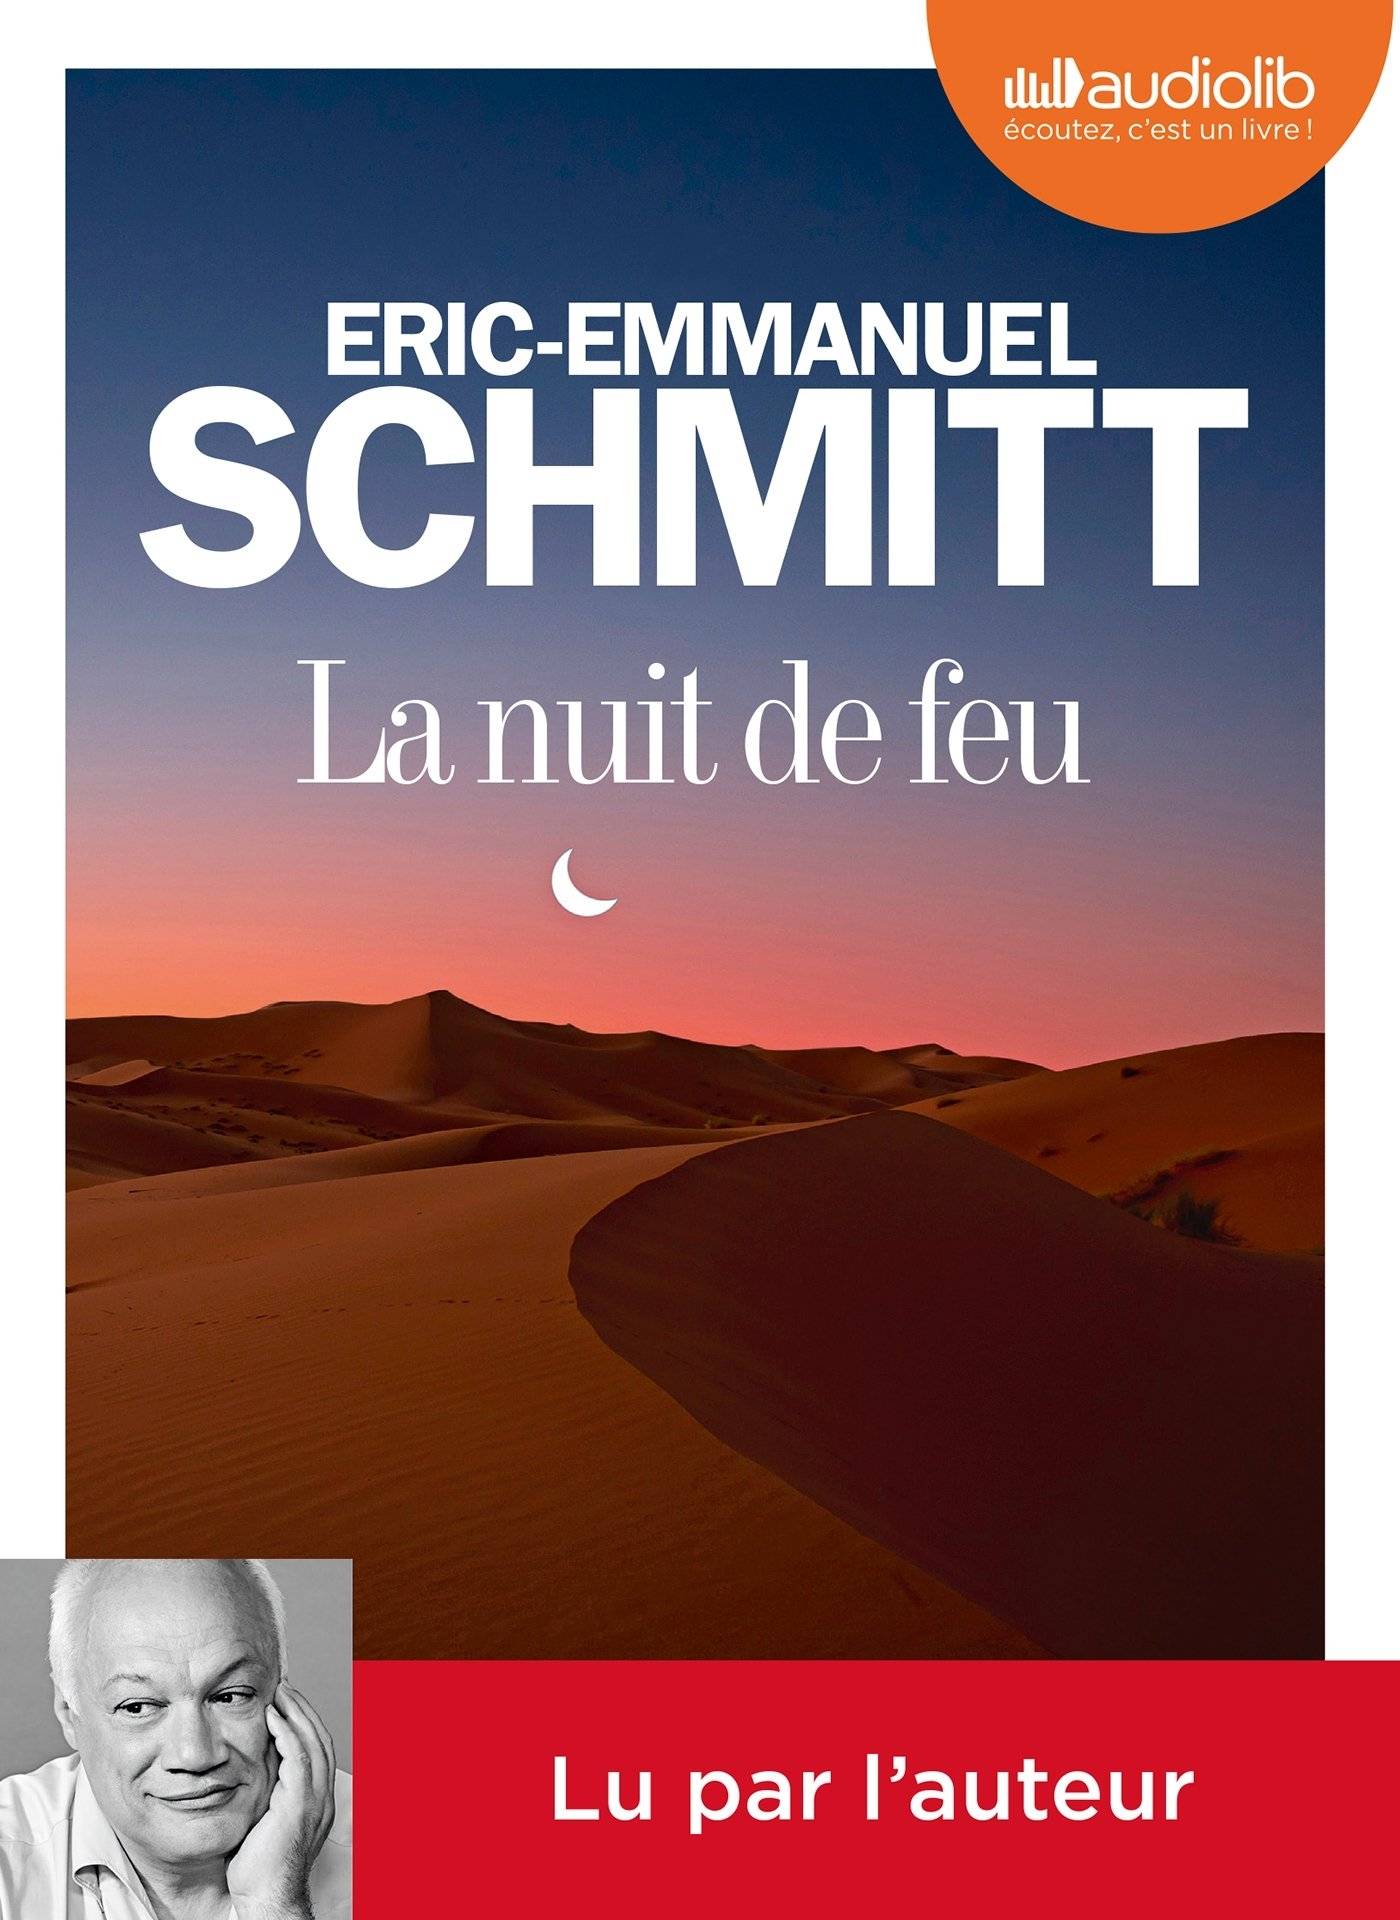 Éric-Emmanuel Schmitt, "La nuit de feu"